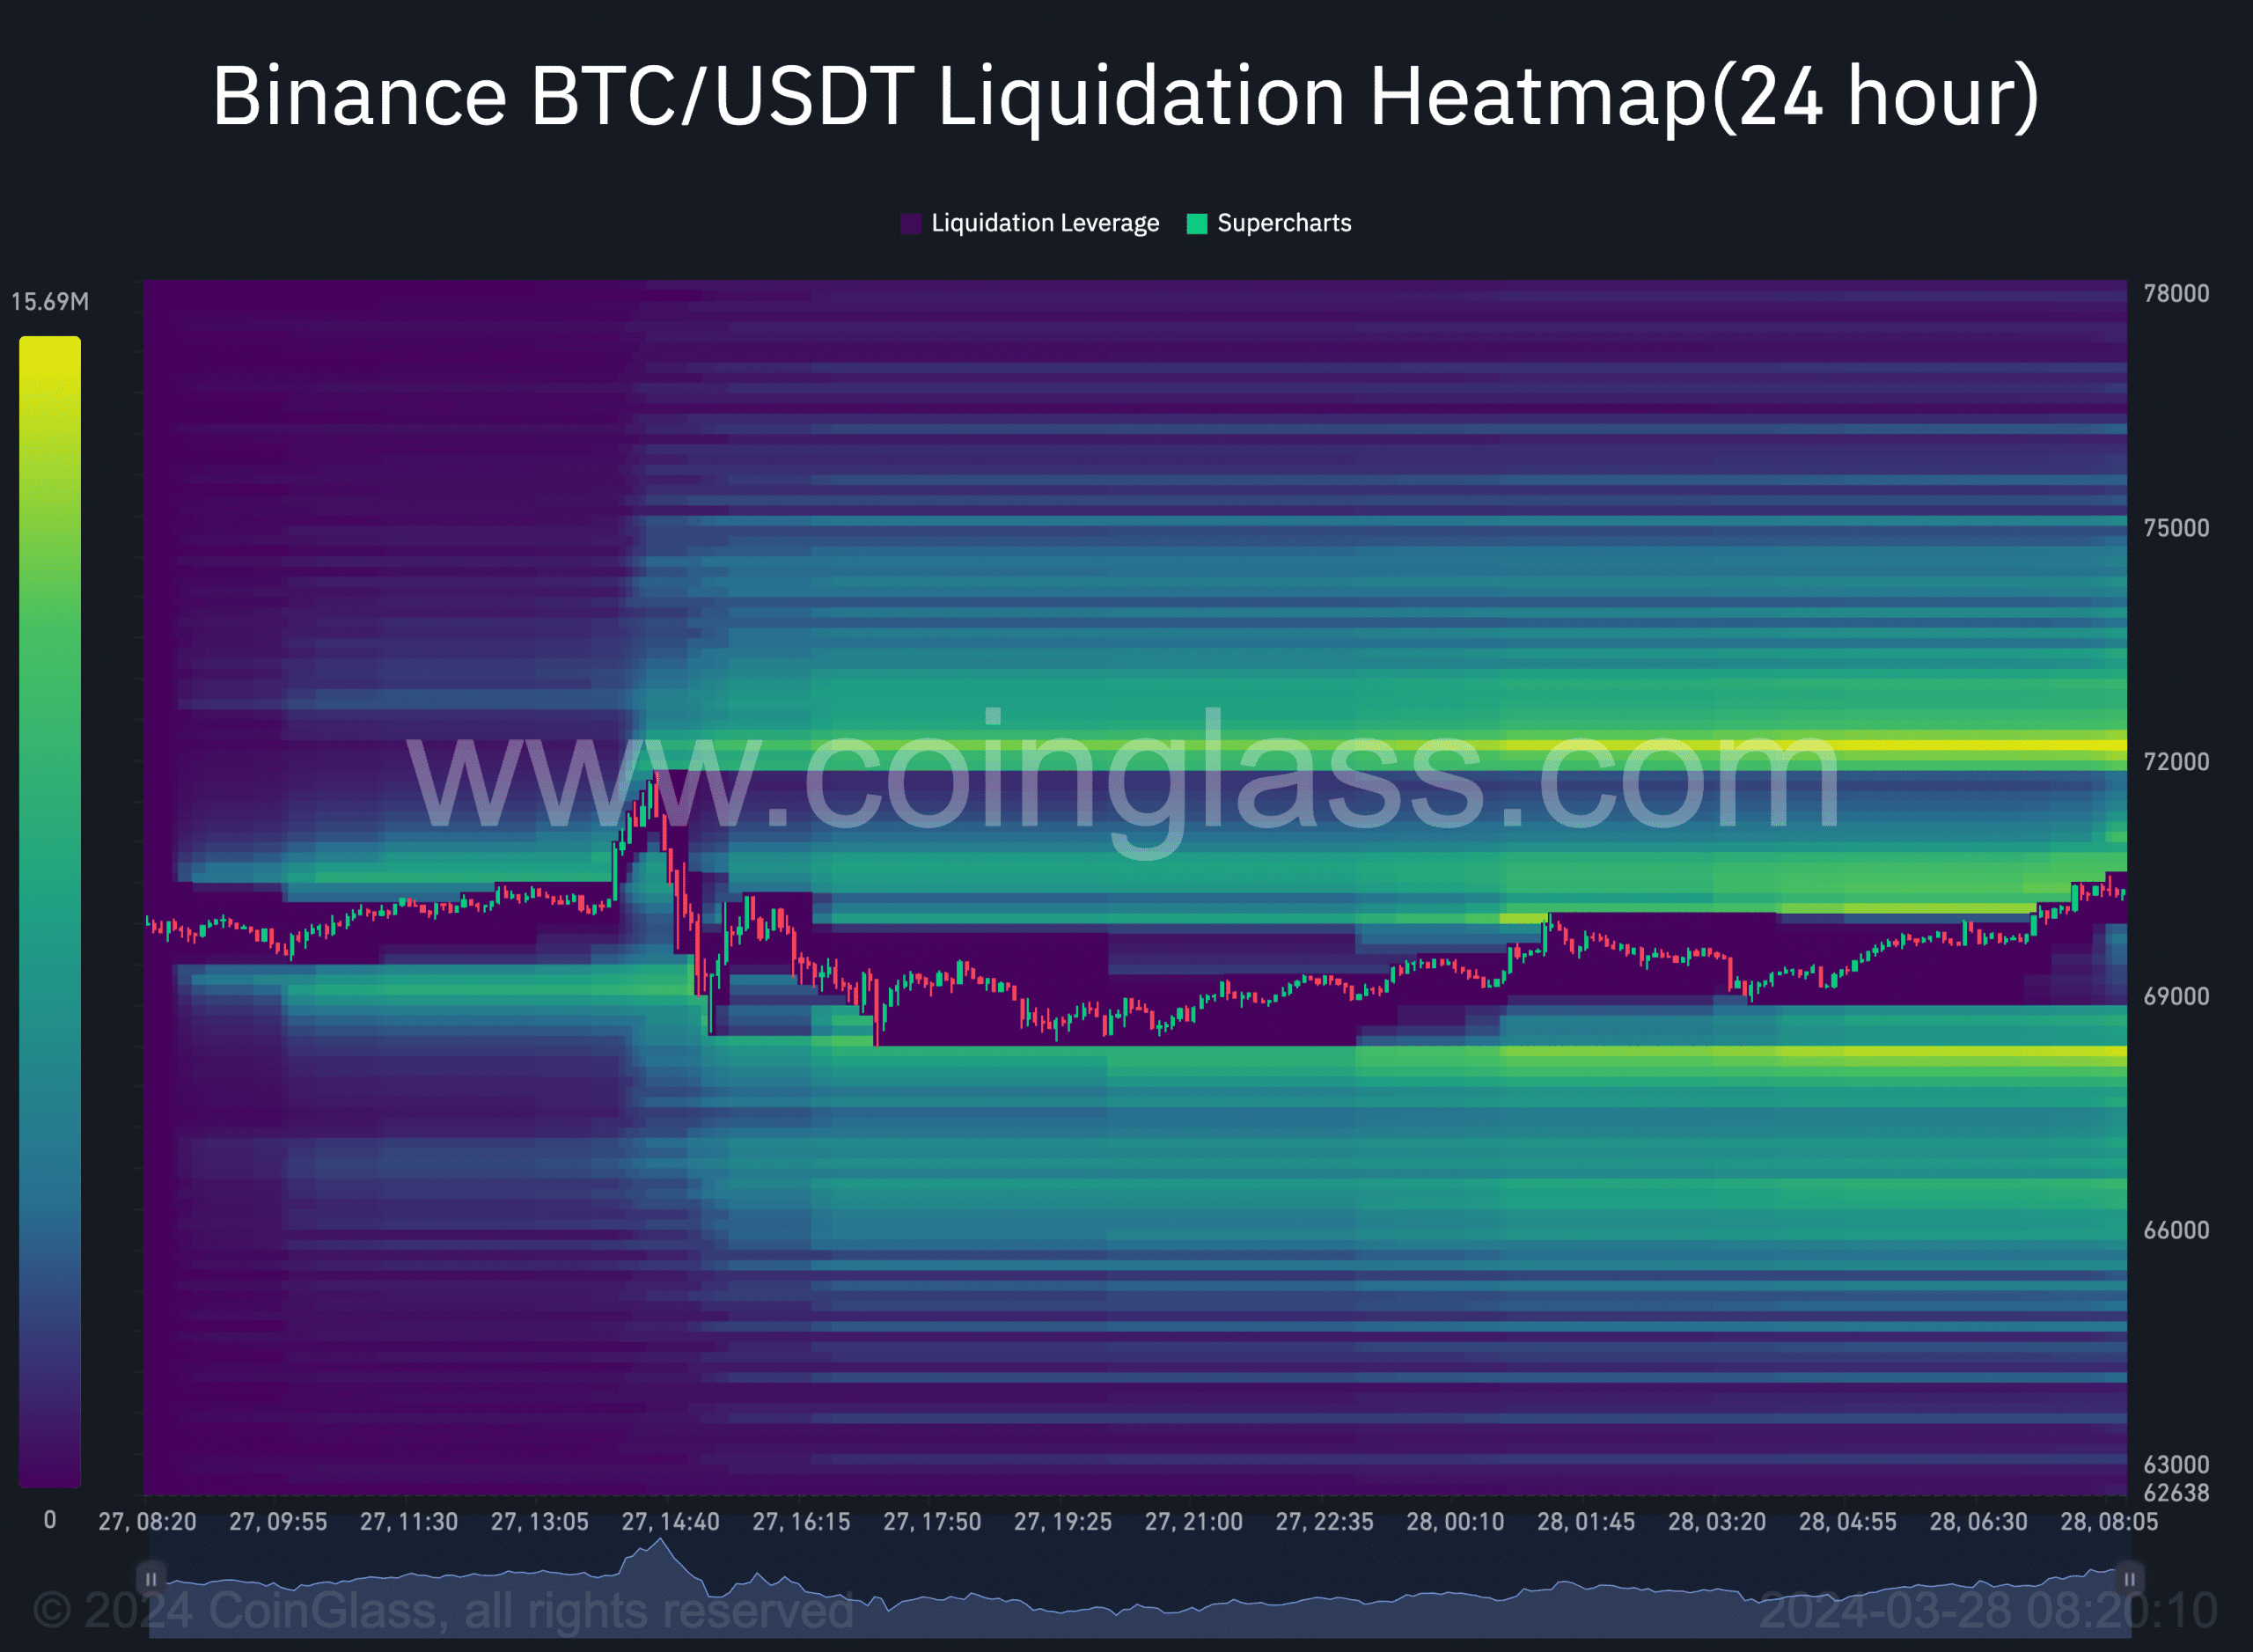 Bitcoin's liquidation heatmap qhia ntau luv luv liquidations